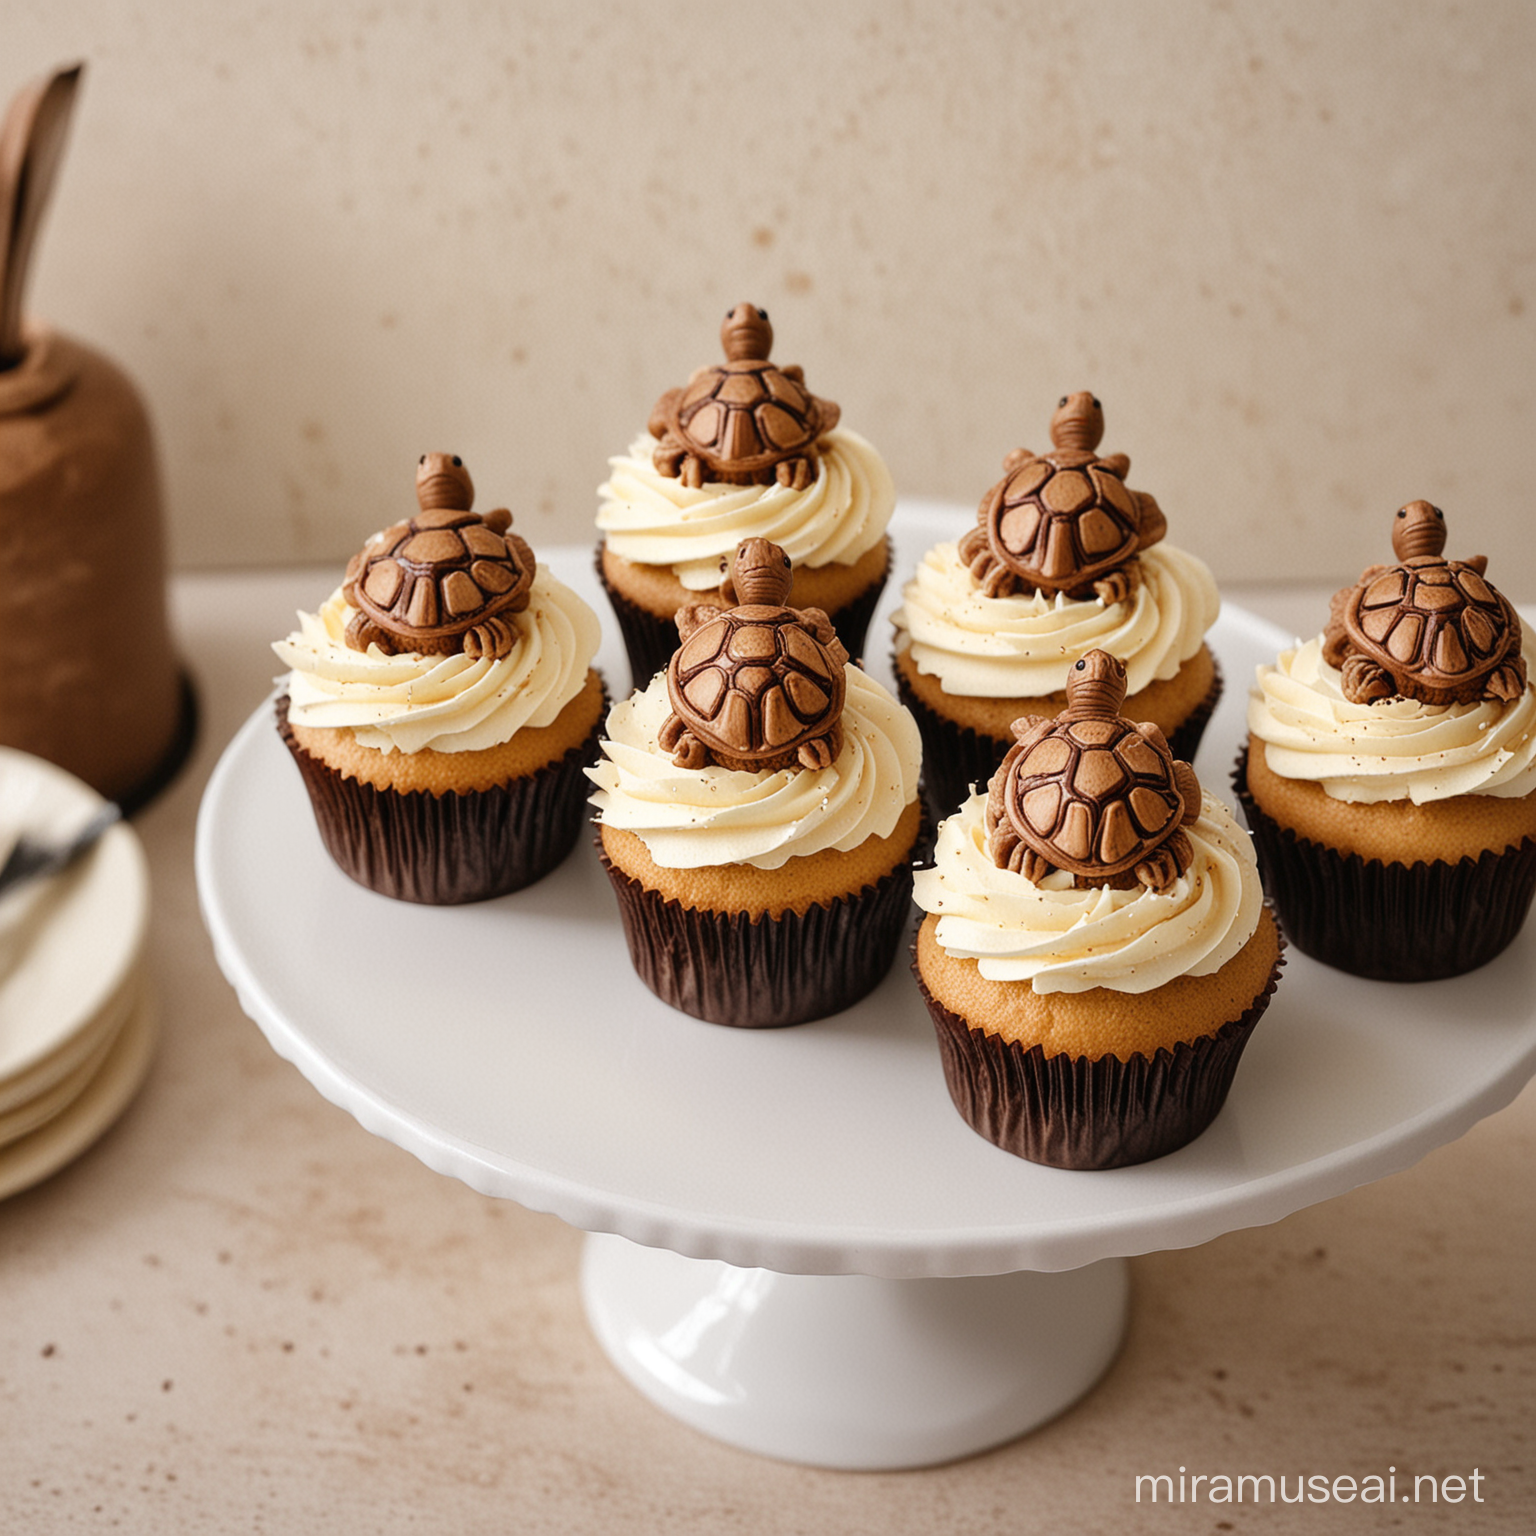 Des cupcakes avec des décorations de tortues marron et beige. Dans une cuisine.